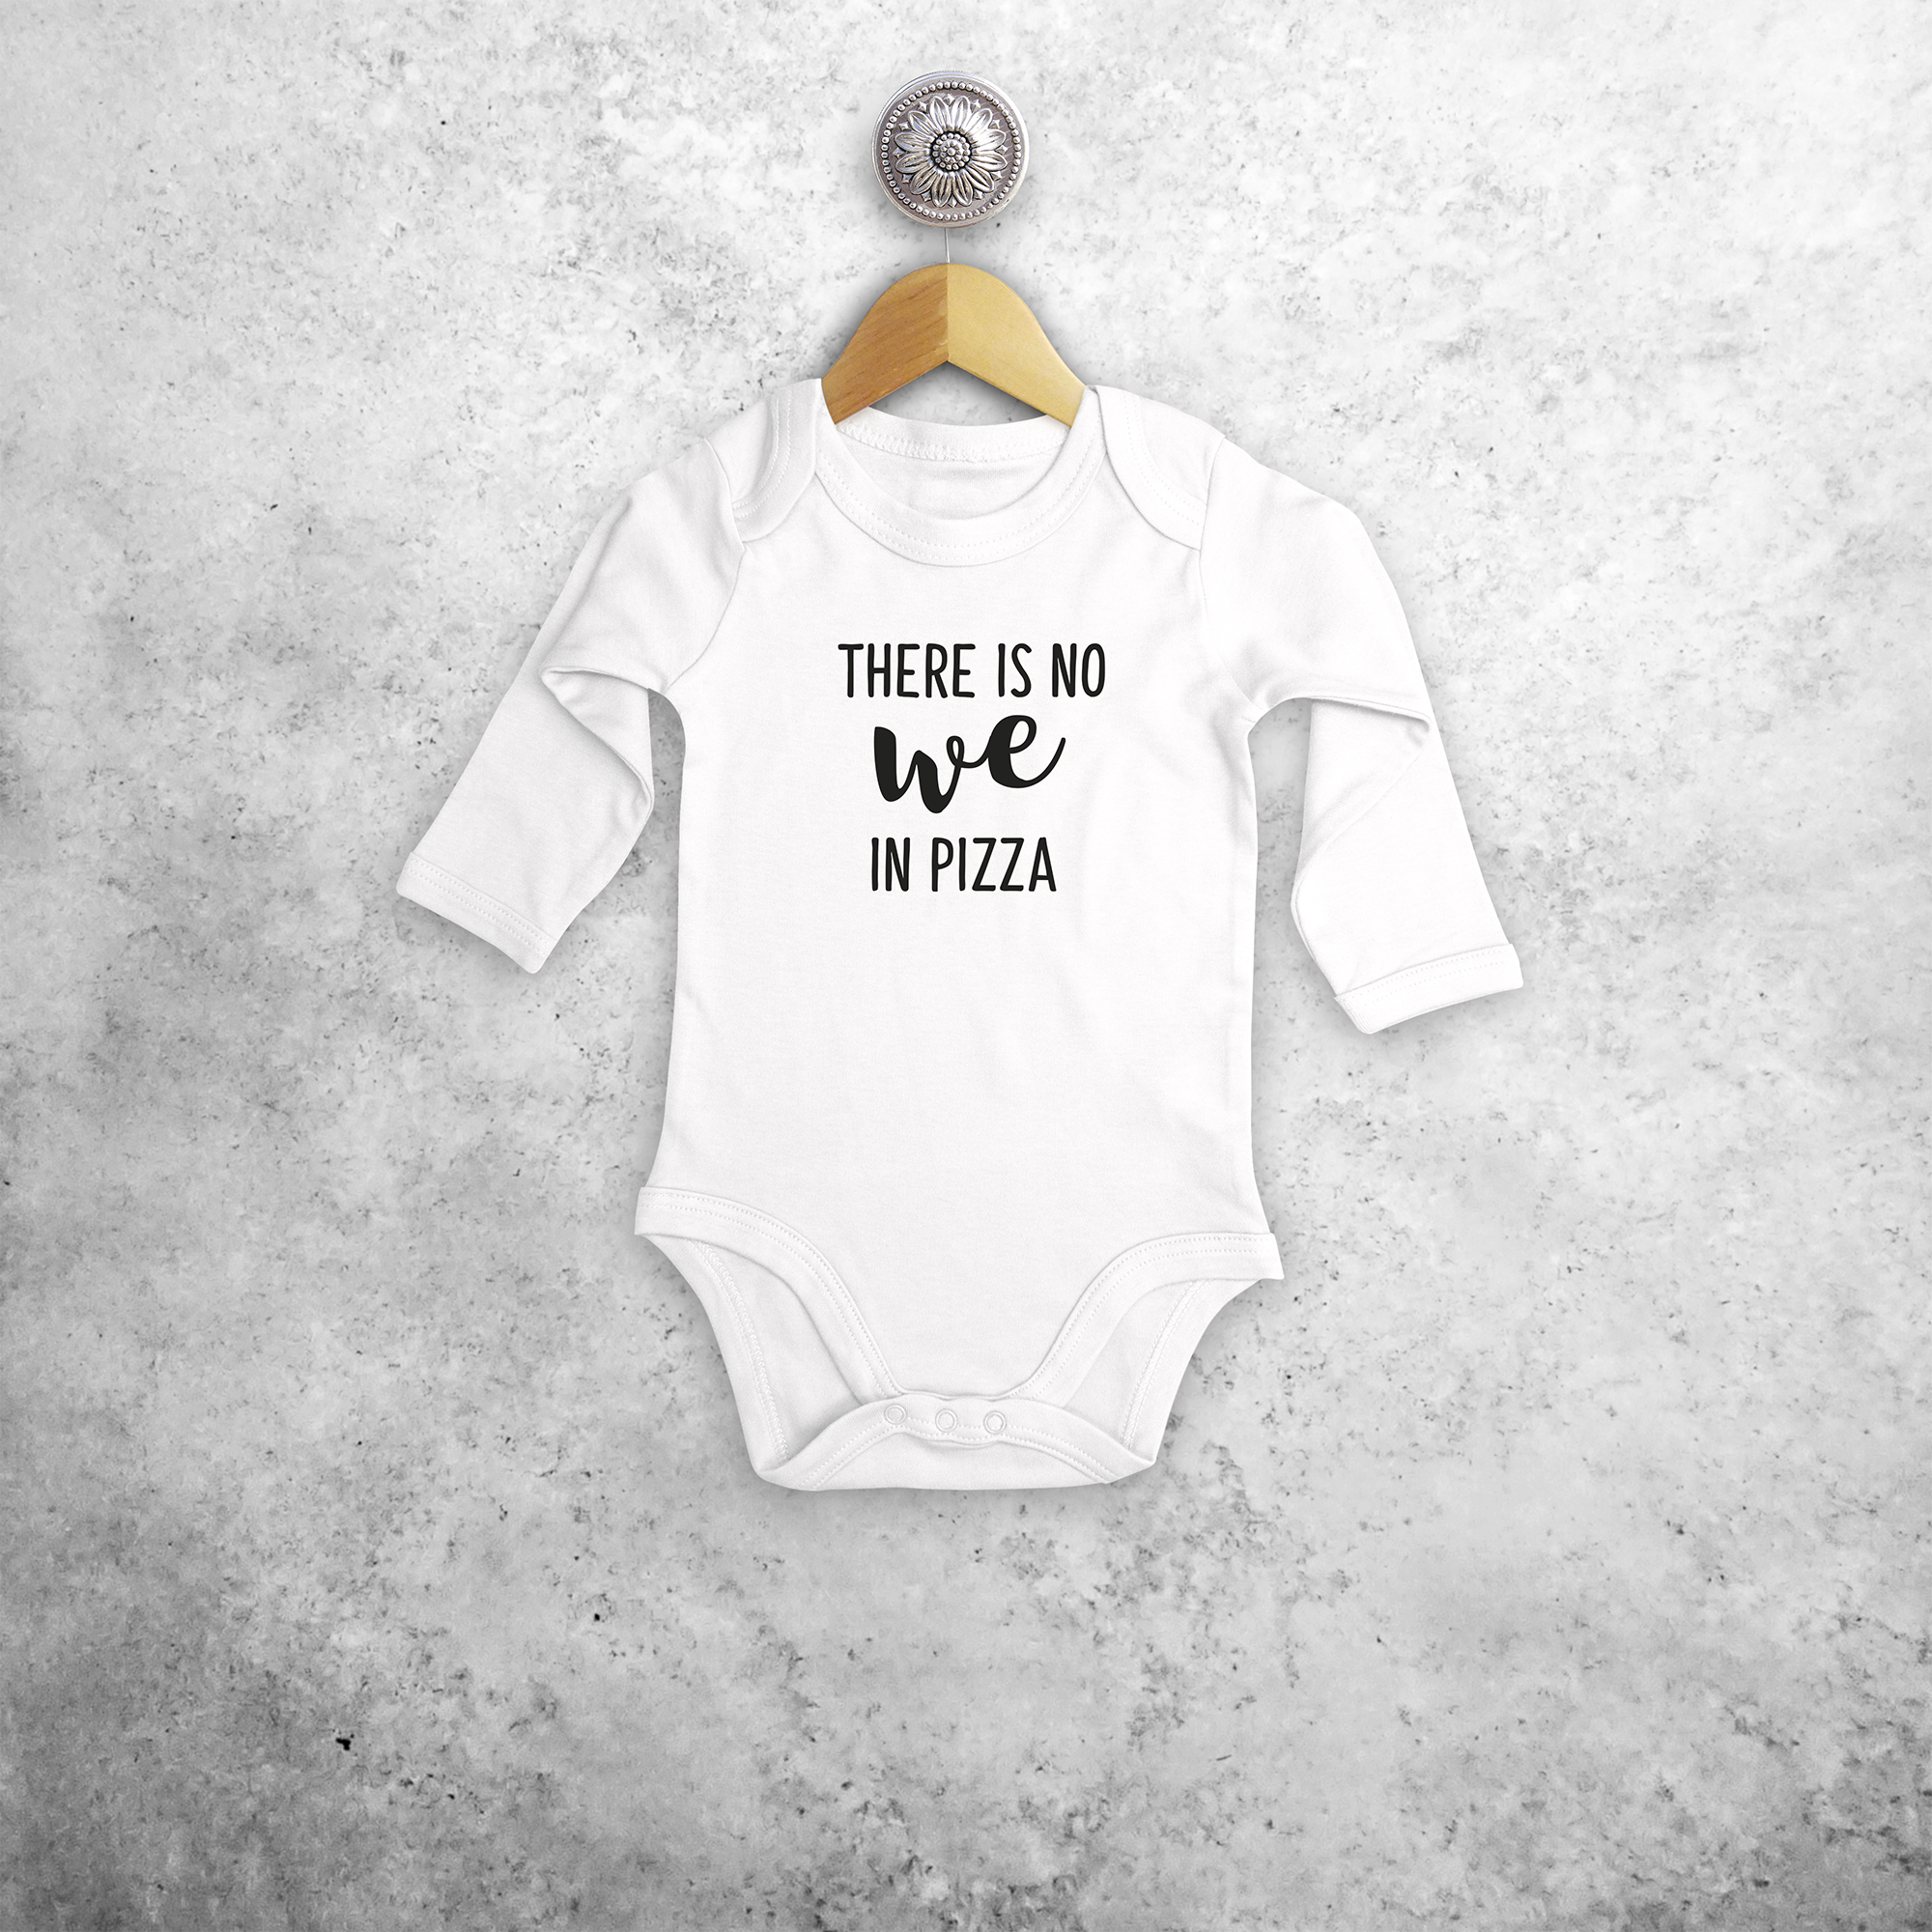 'There is no we in pizza' baby kruippakje met lange mouwen